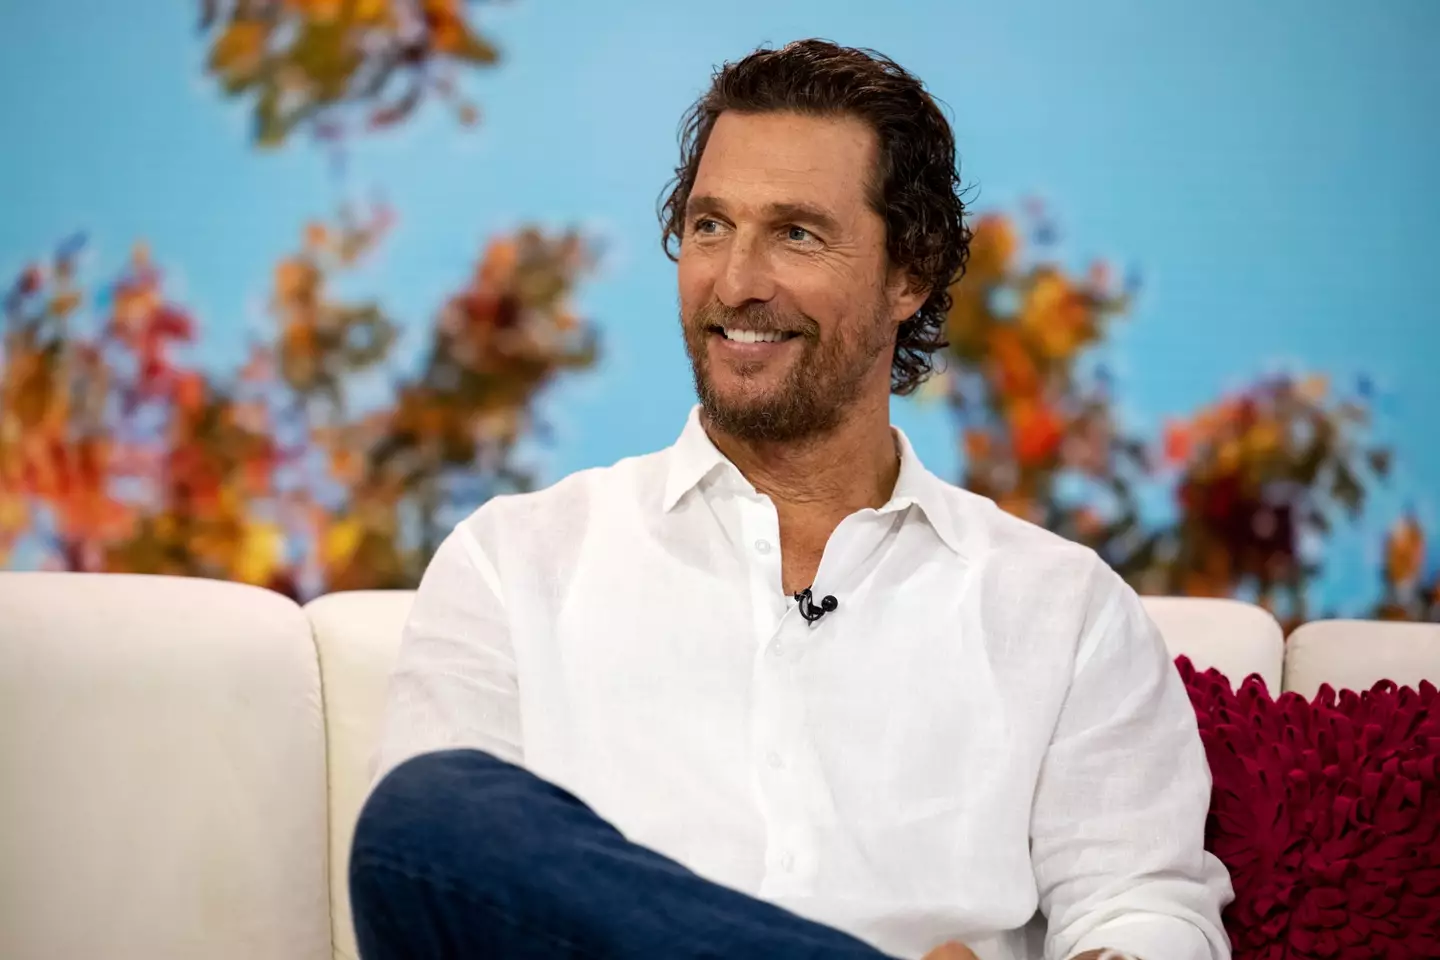 Matthew McConaughey found Bateman's meltdown very entertaining.